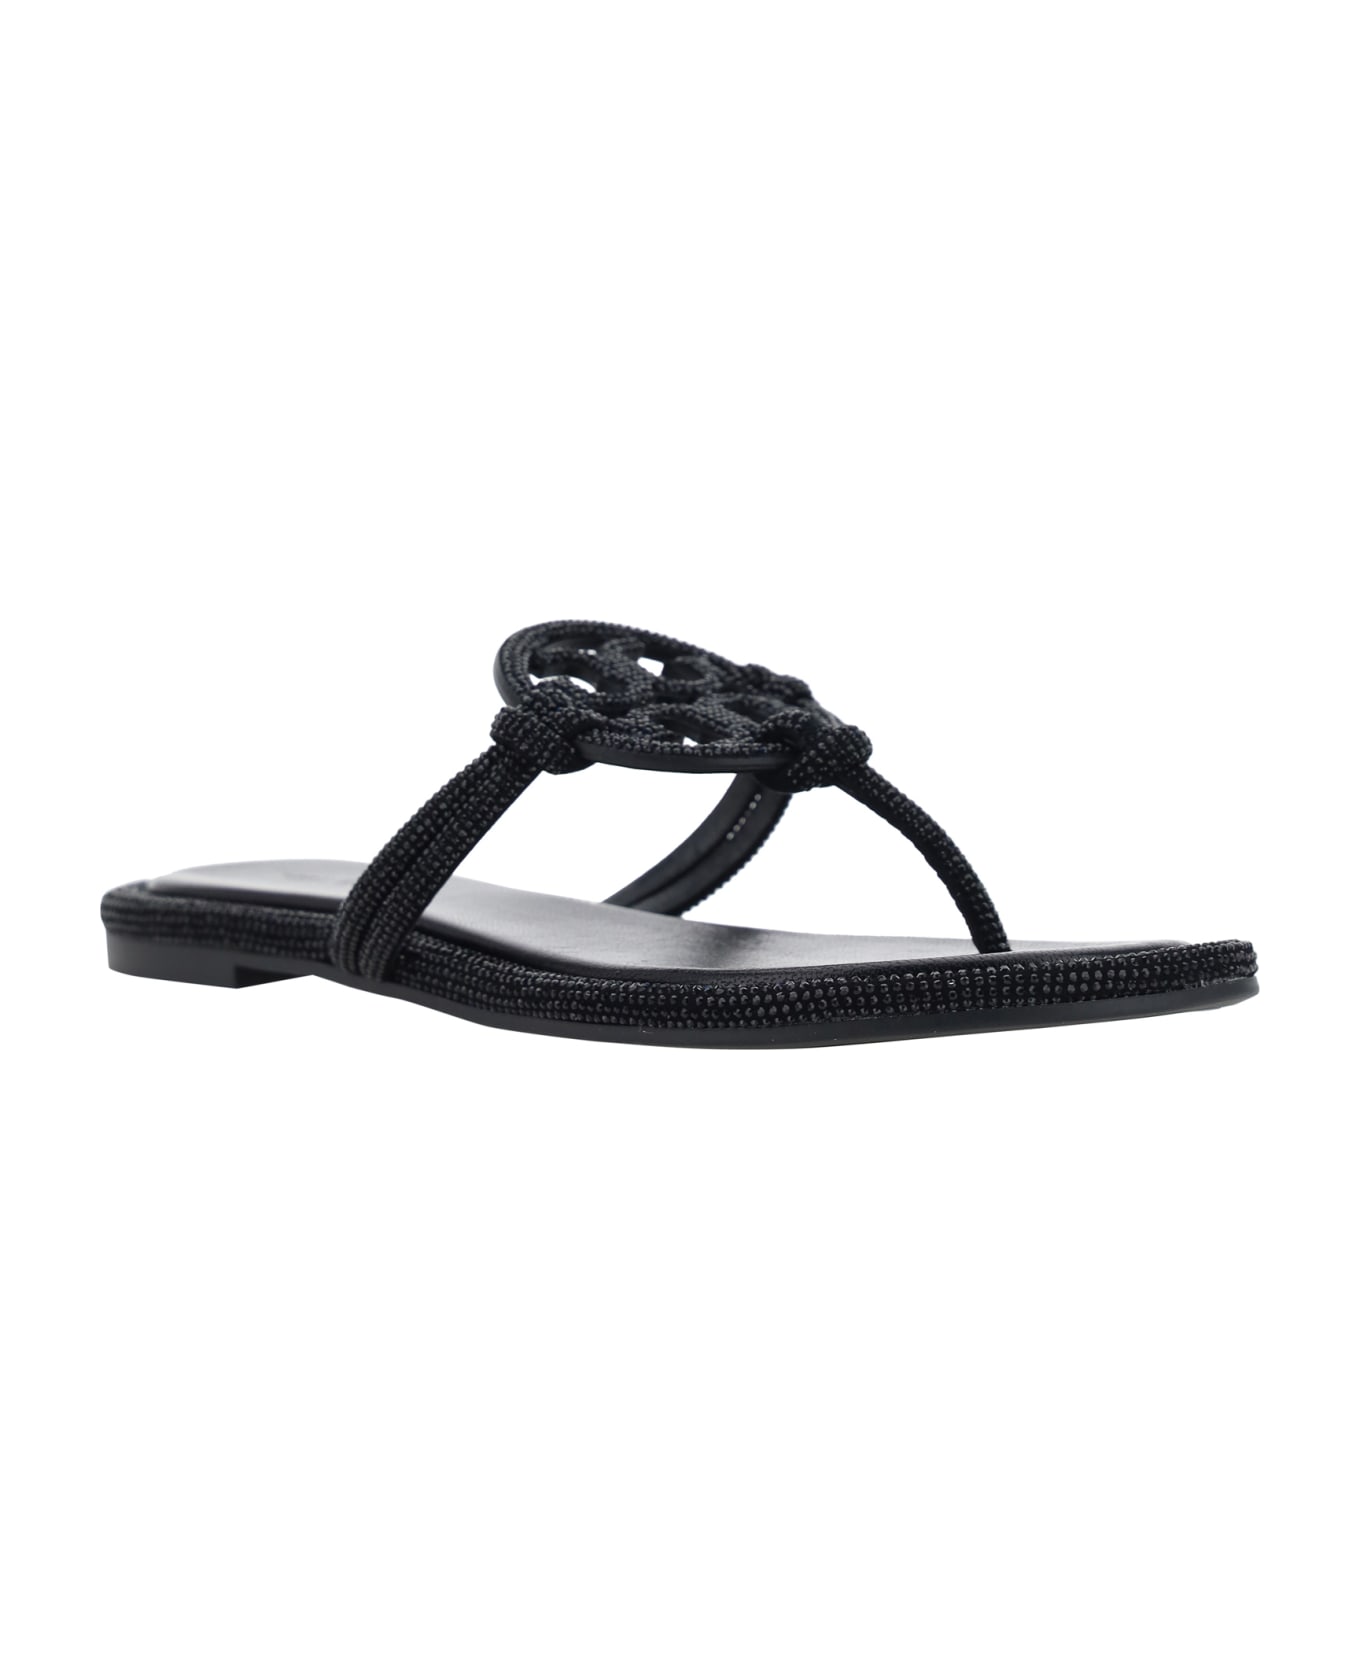 Tory Burch 'miller' Embellished Sandals - Black